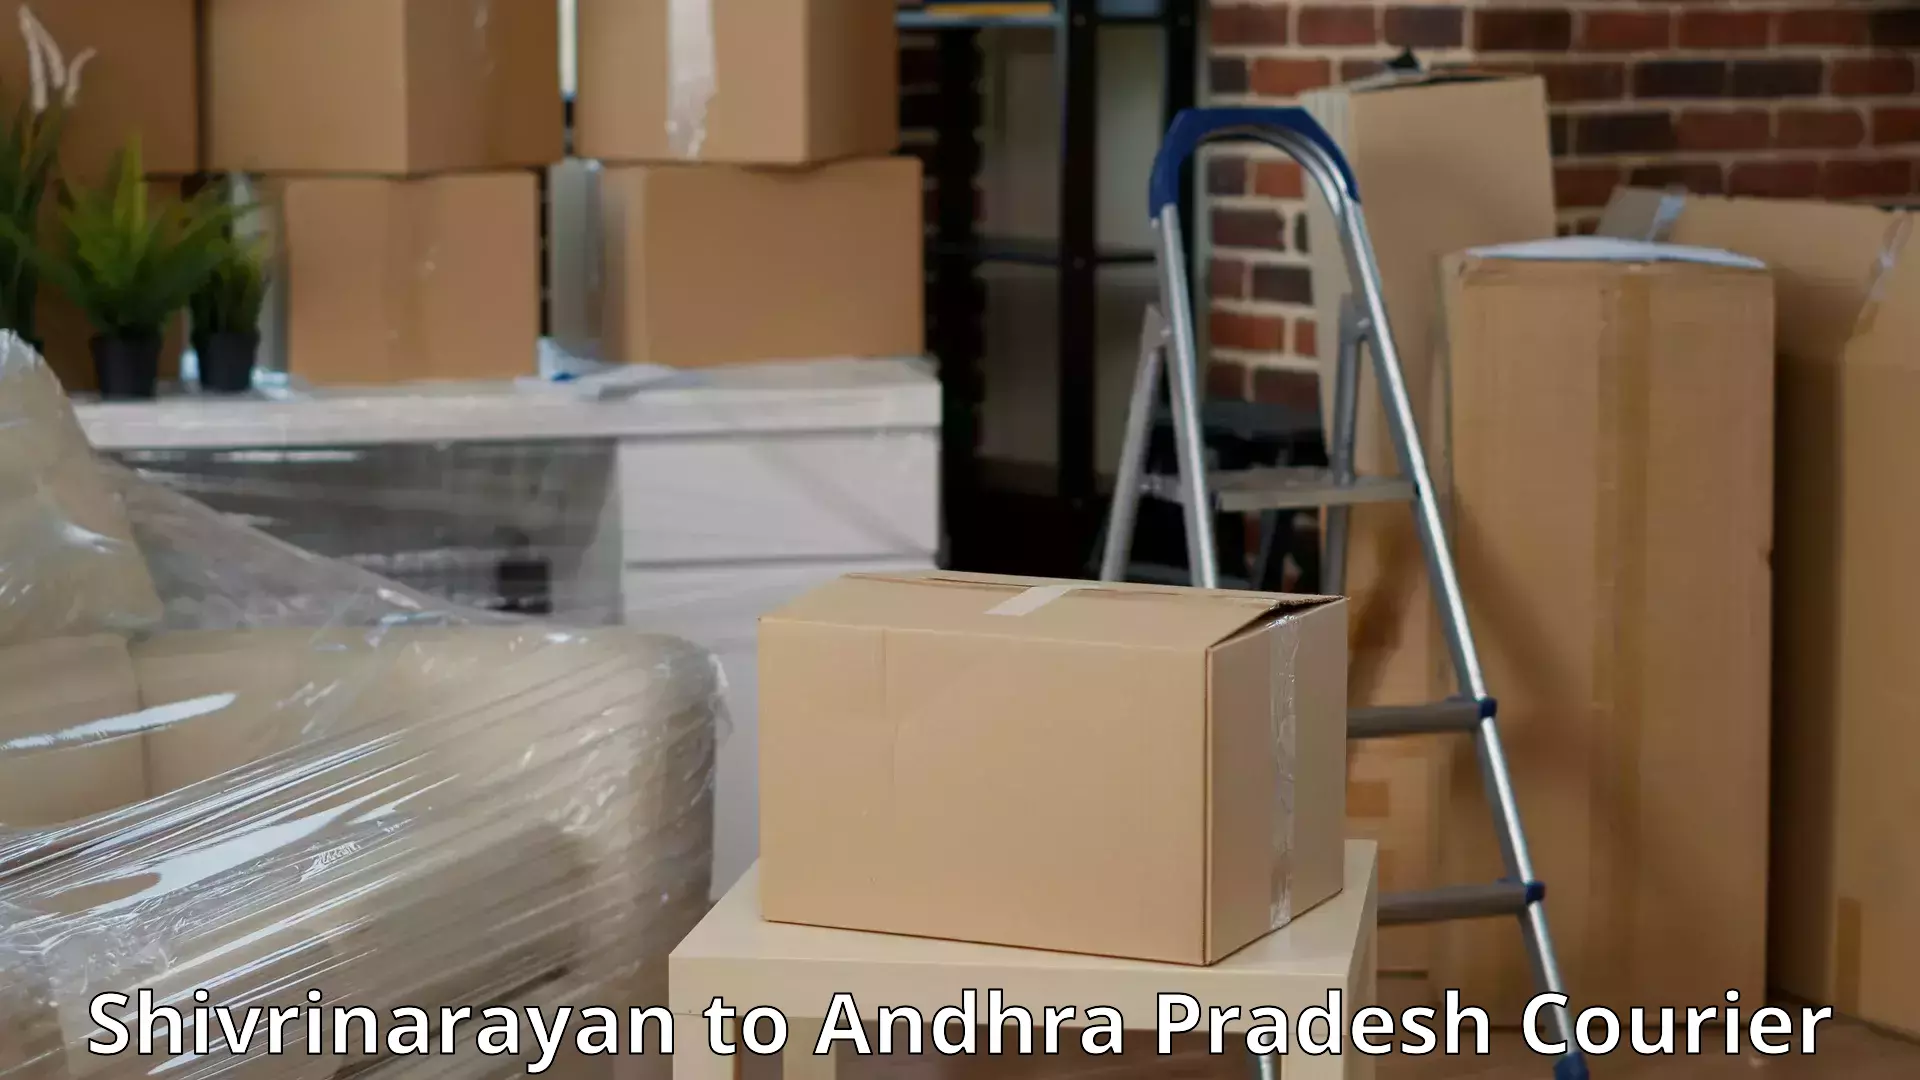 Furniture transport company Shivrinarayan to Cuddapah